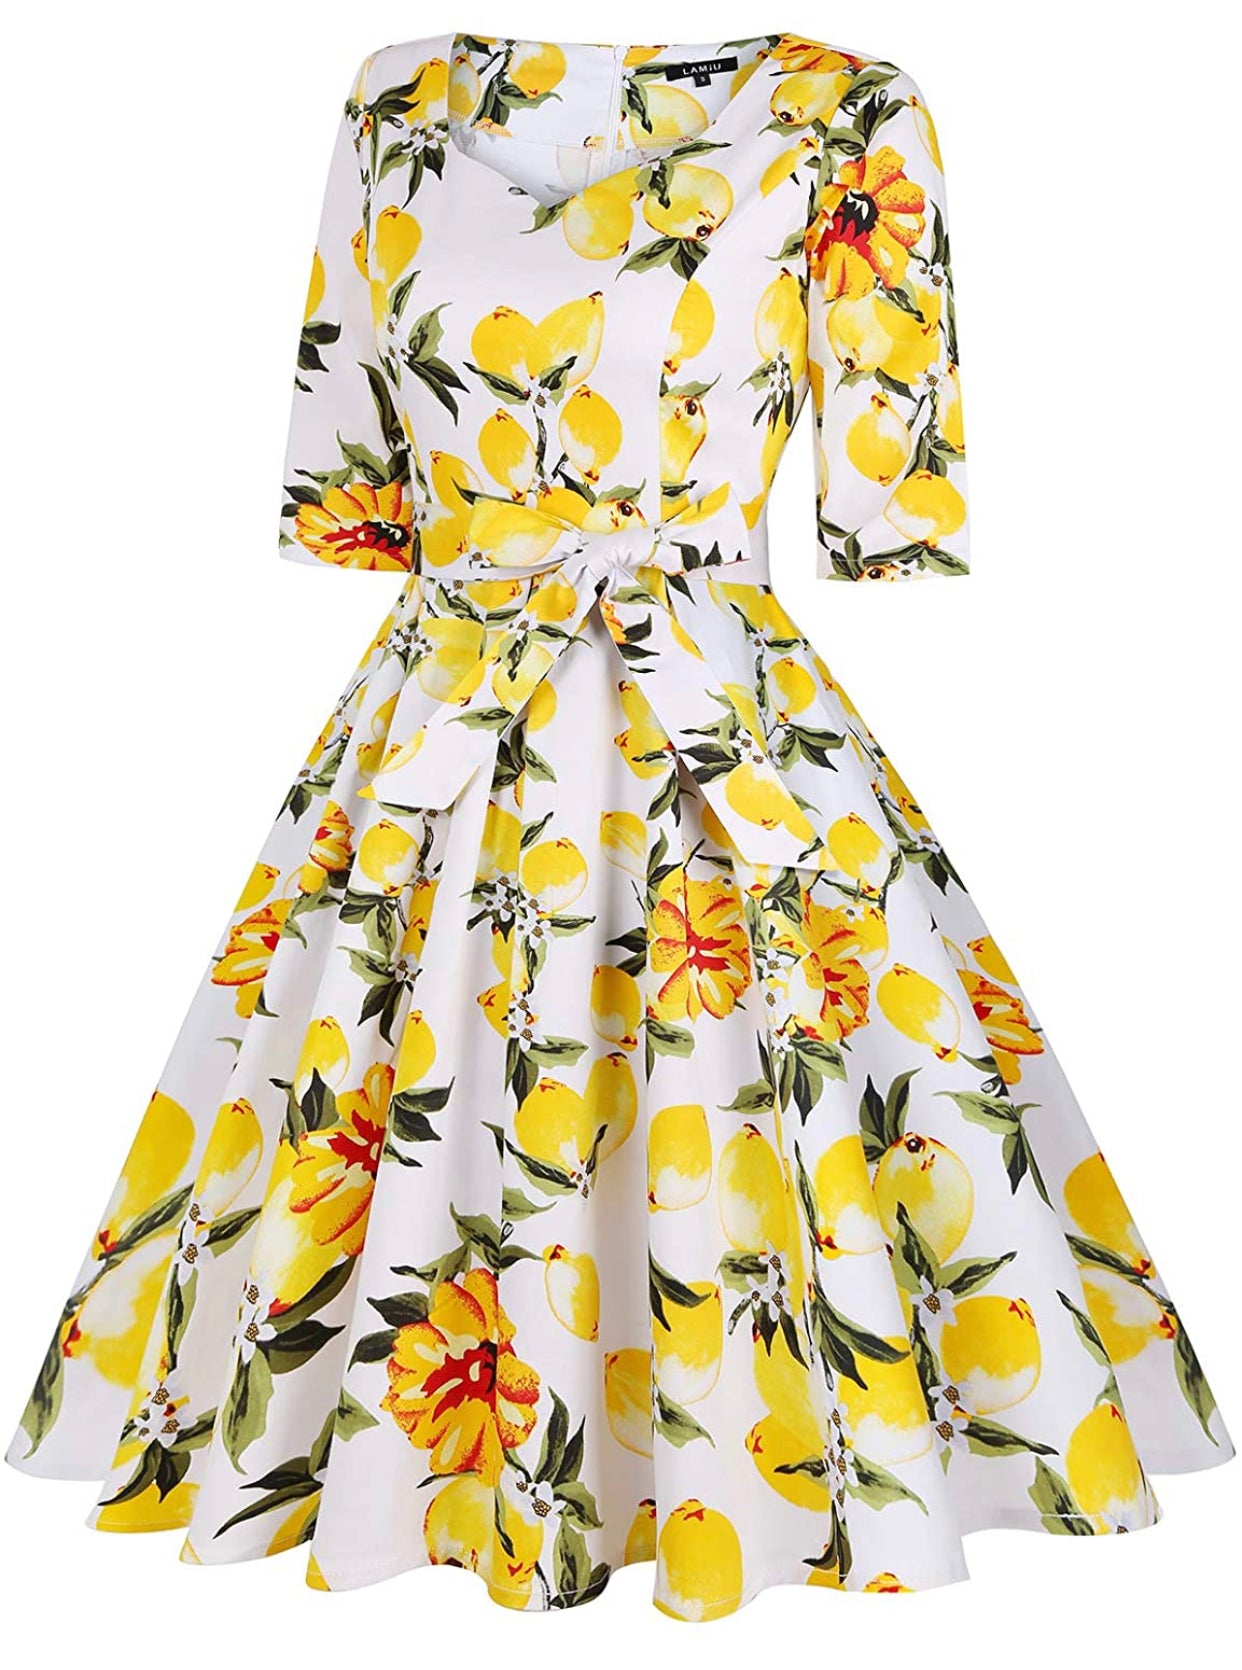 Sweetheart Neckline Rockability Lemon White Dress, Sizes Small - 2XLarge (US Sized 4 - 22)